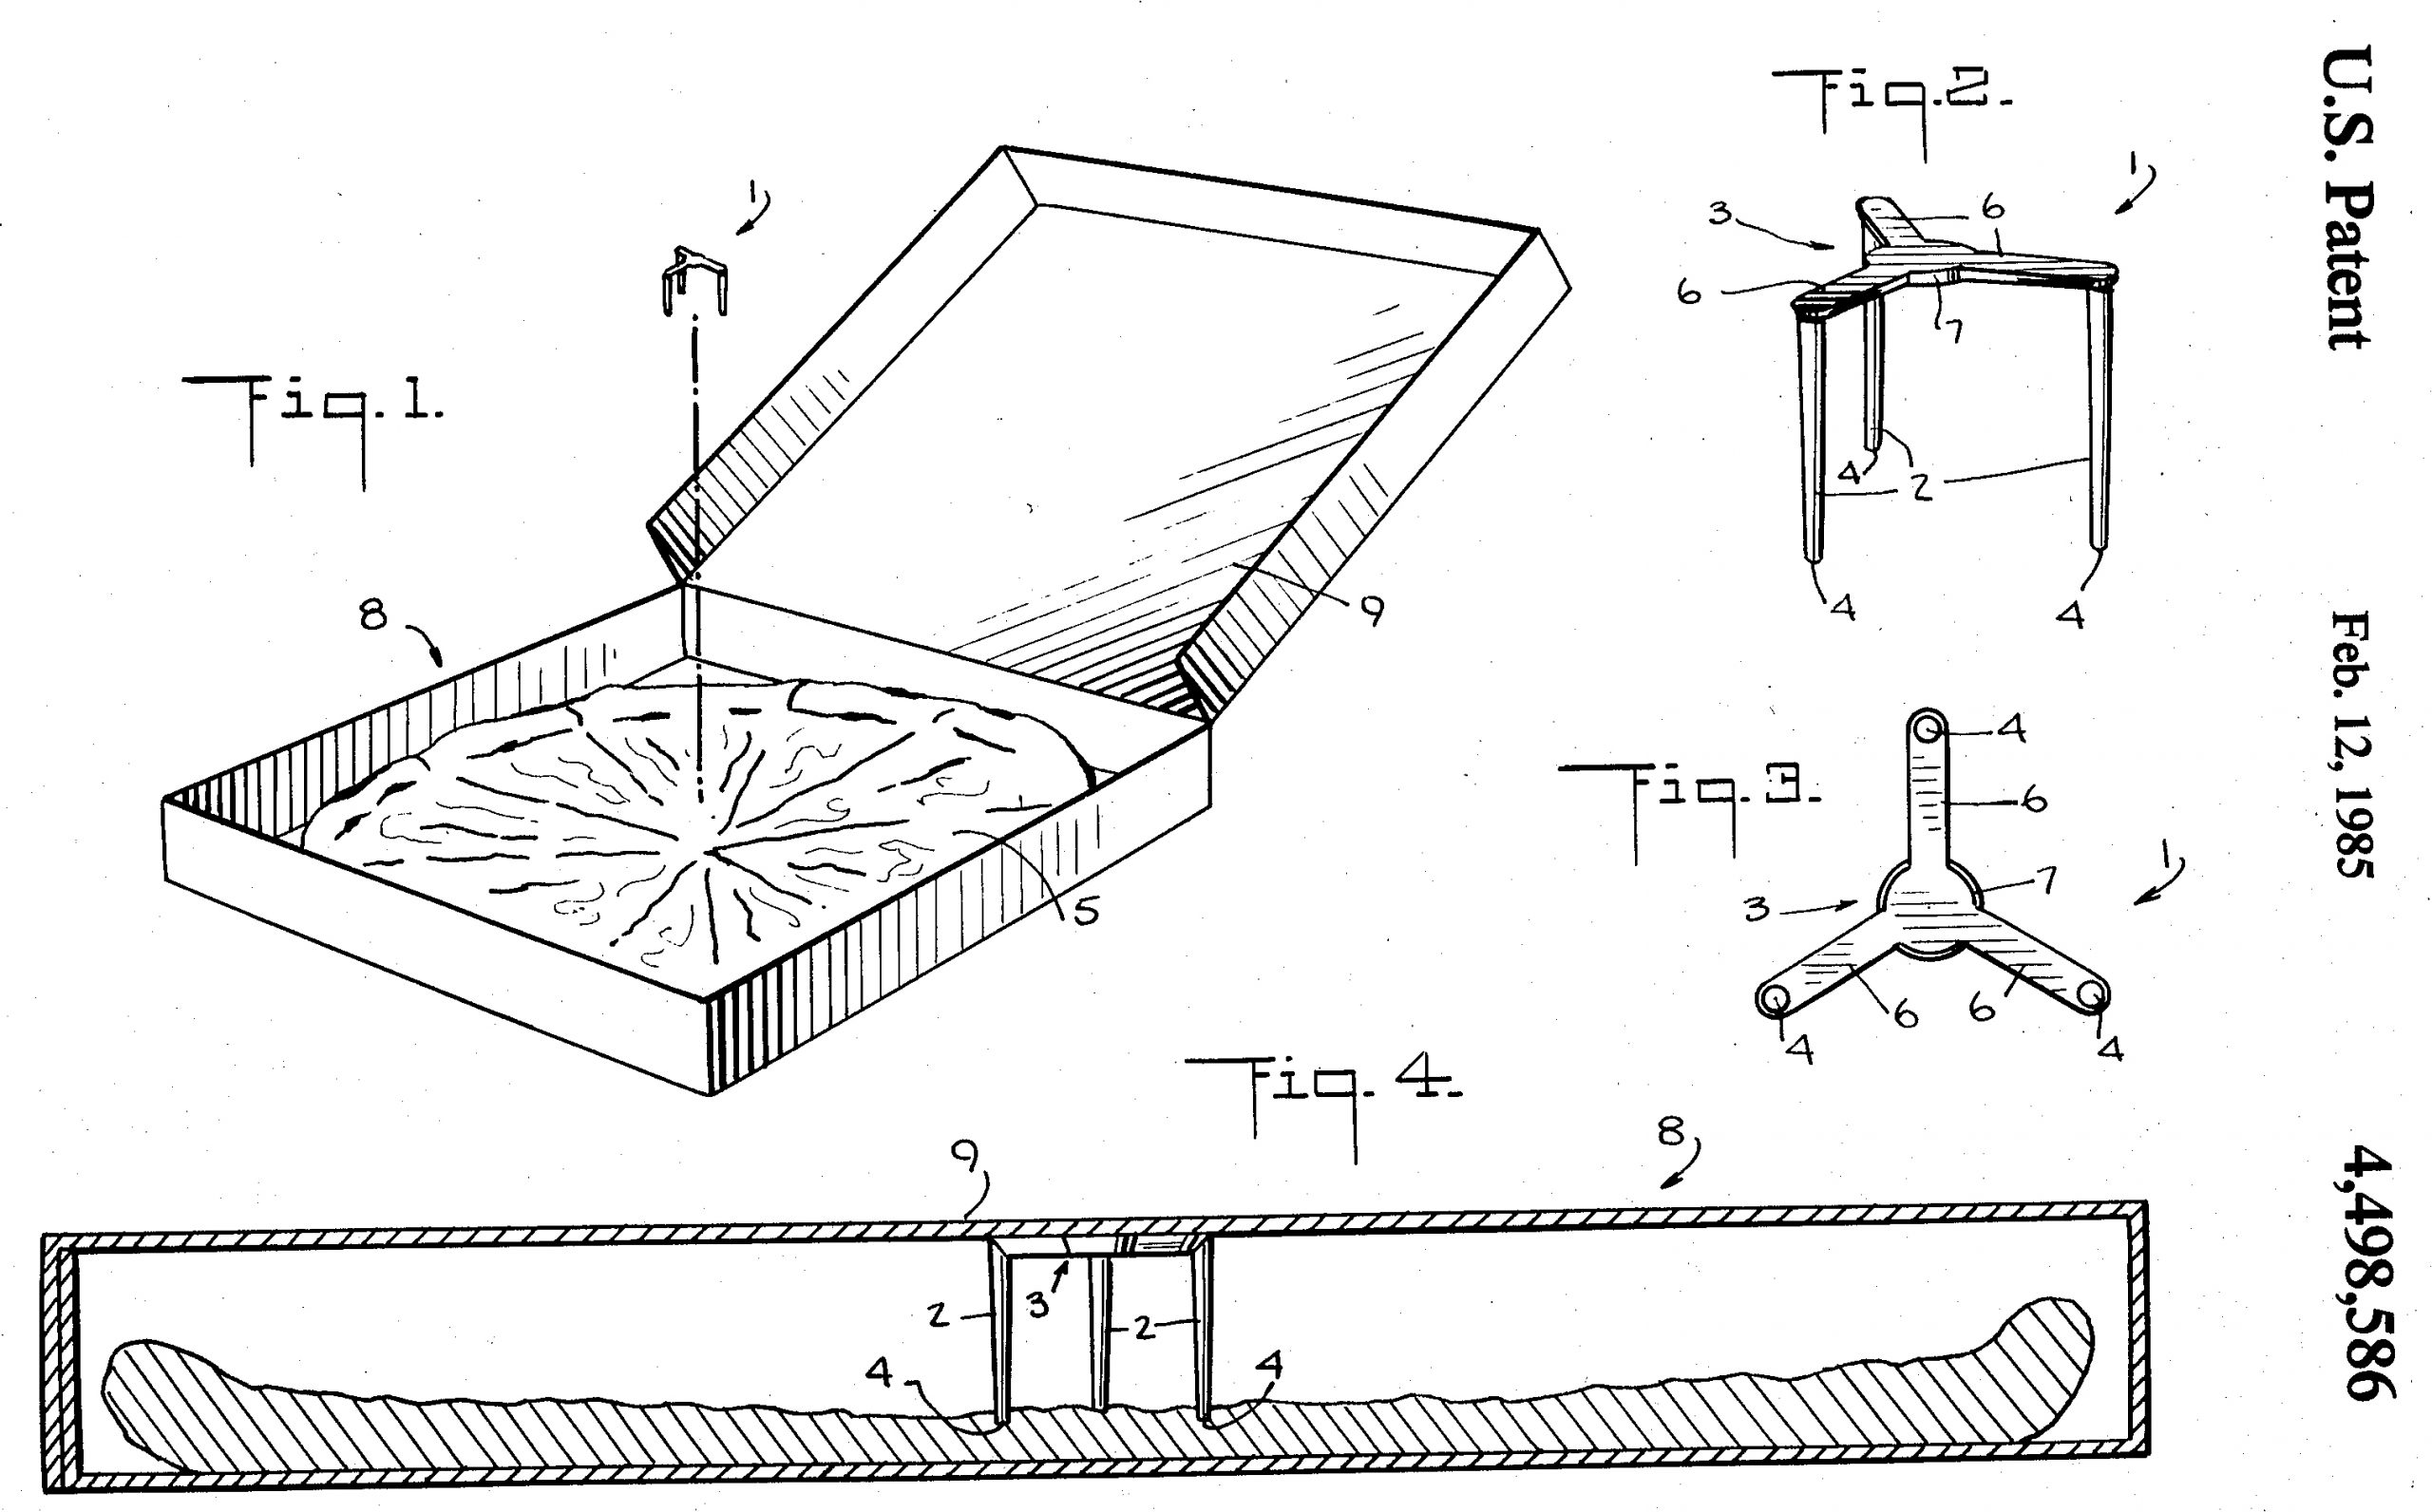 Pizza Patent Design Base